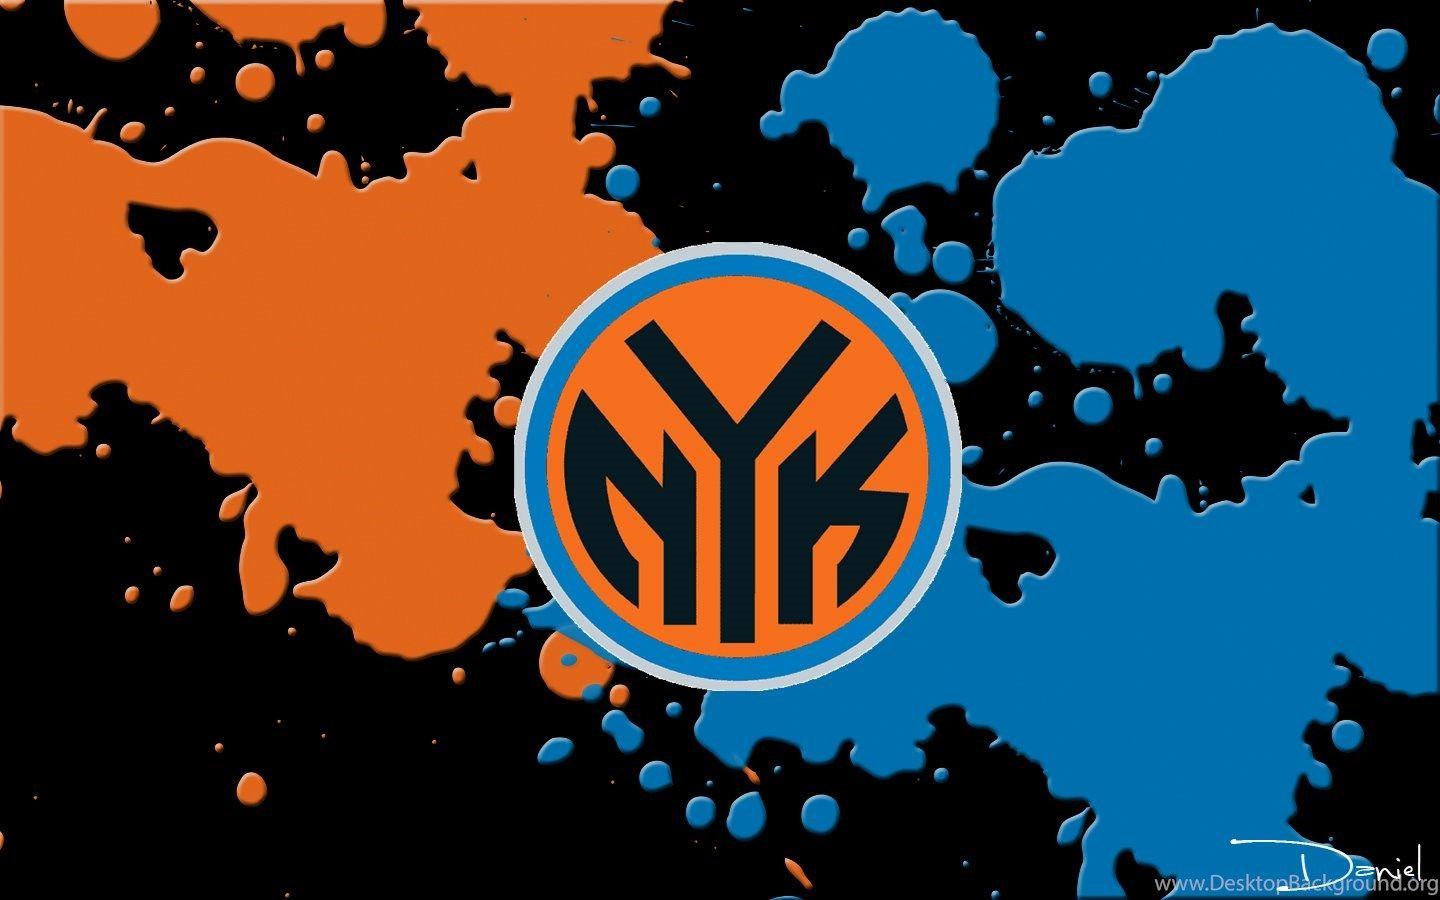 100 New York Knicks Wallpapers  WallpaperSafari